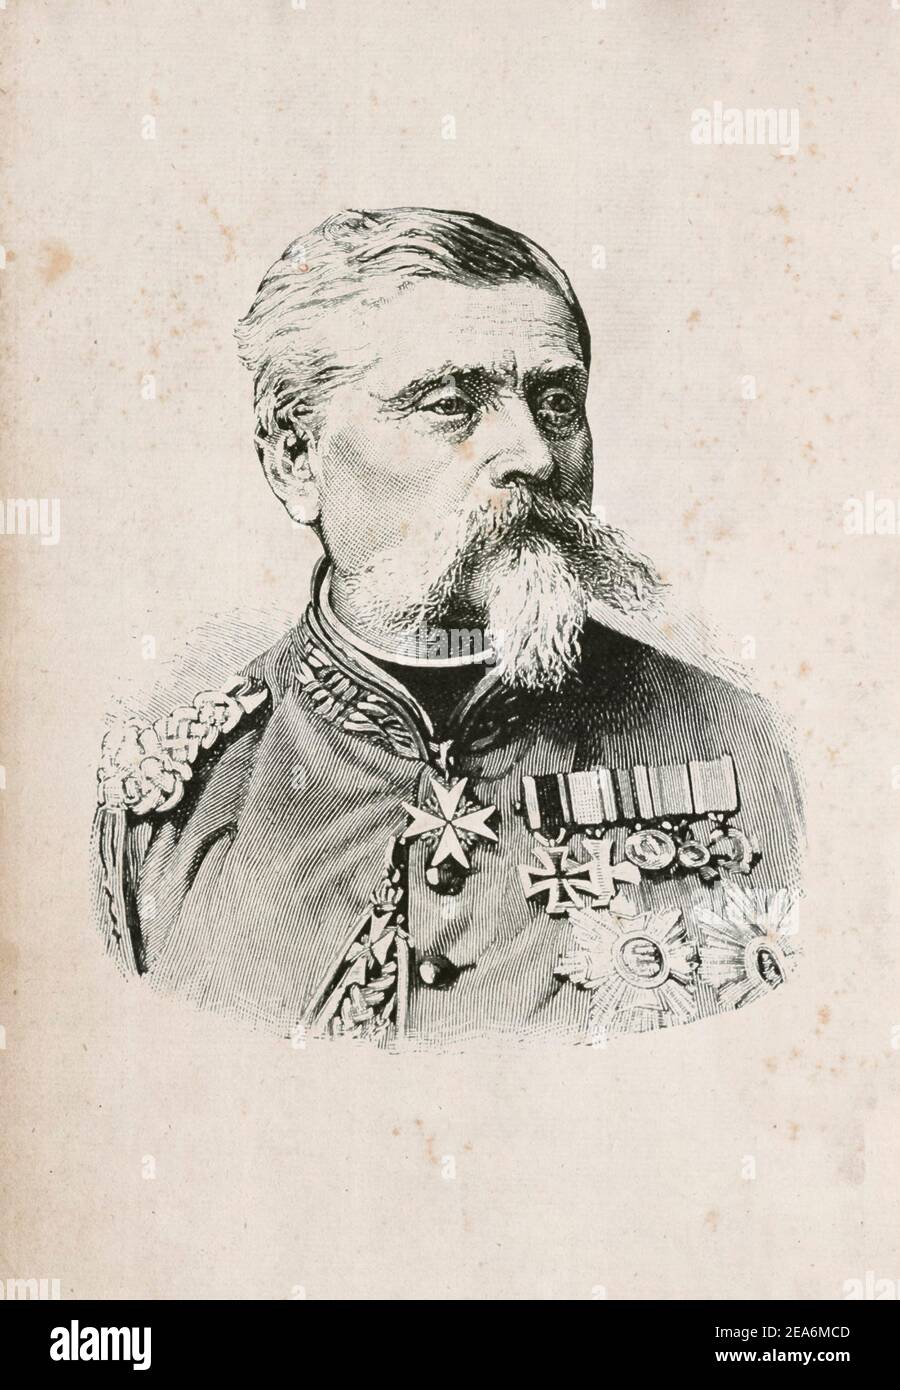 Ludwig Samson Heinrich Arthur Freiherr von und zu der Tann-Rathsamhausen (1815 – 1881) was a Bavarian general. Stock Photo